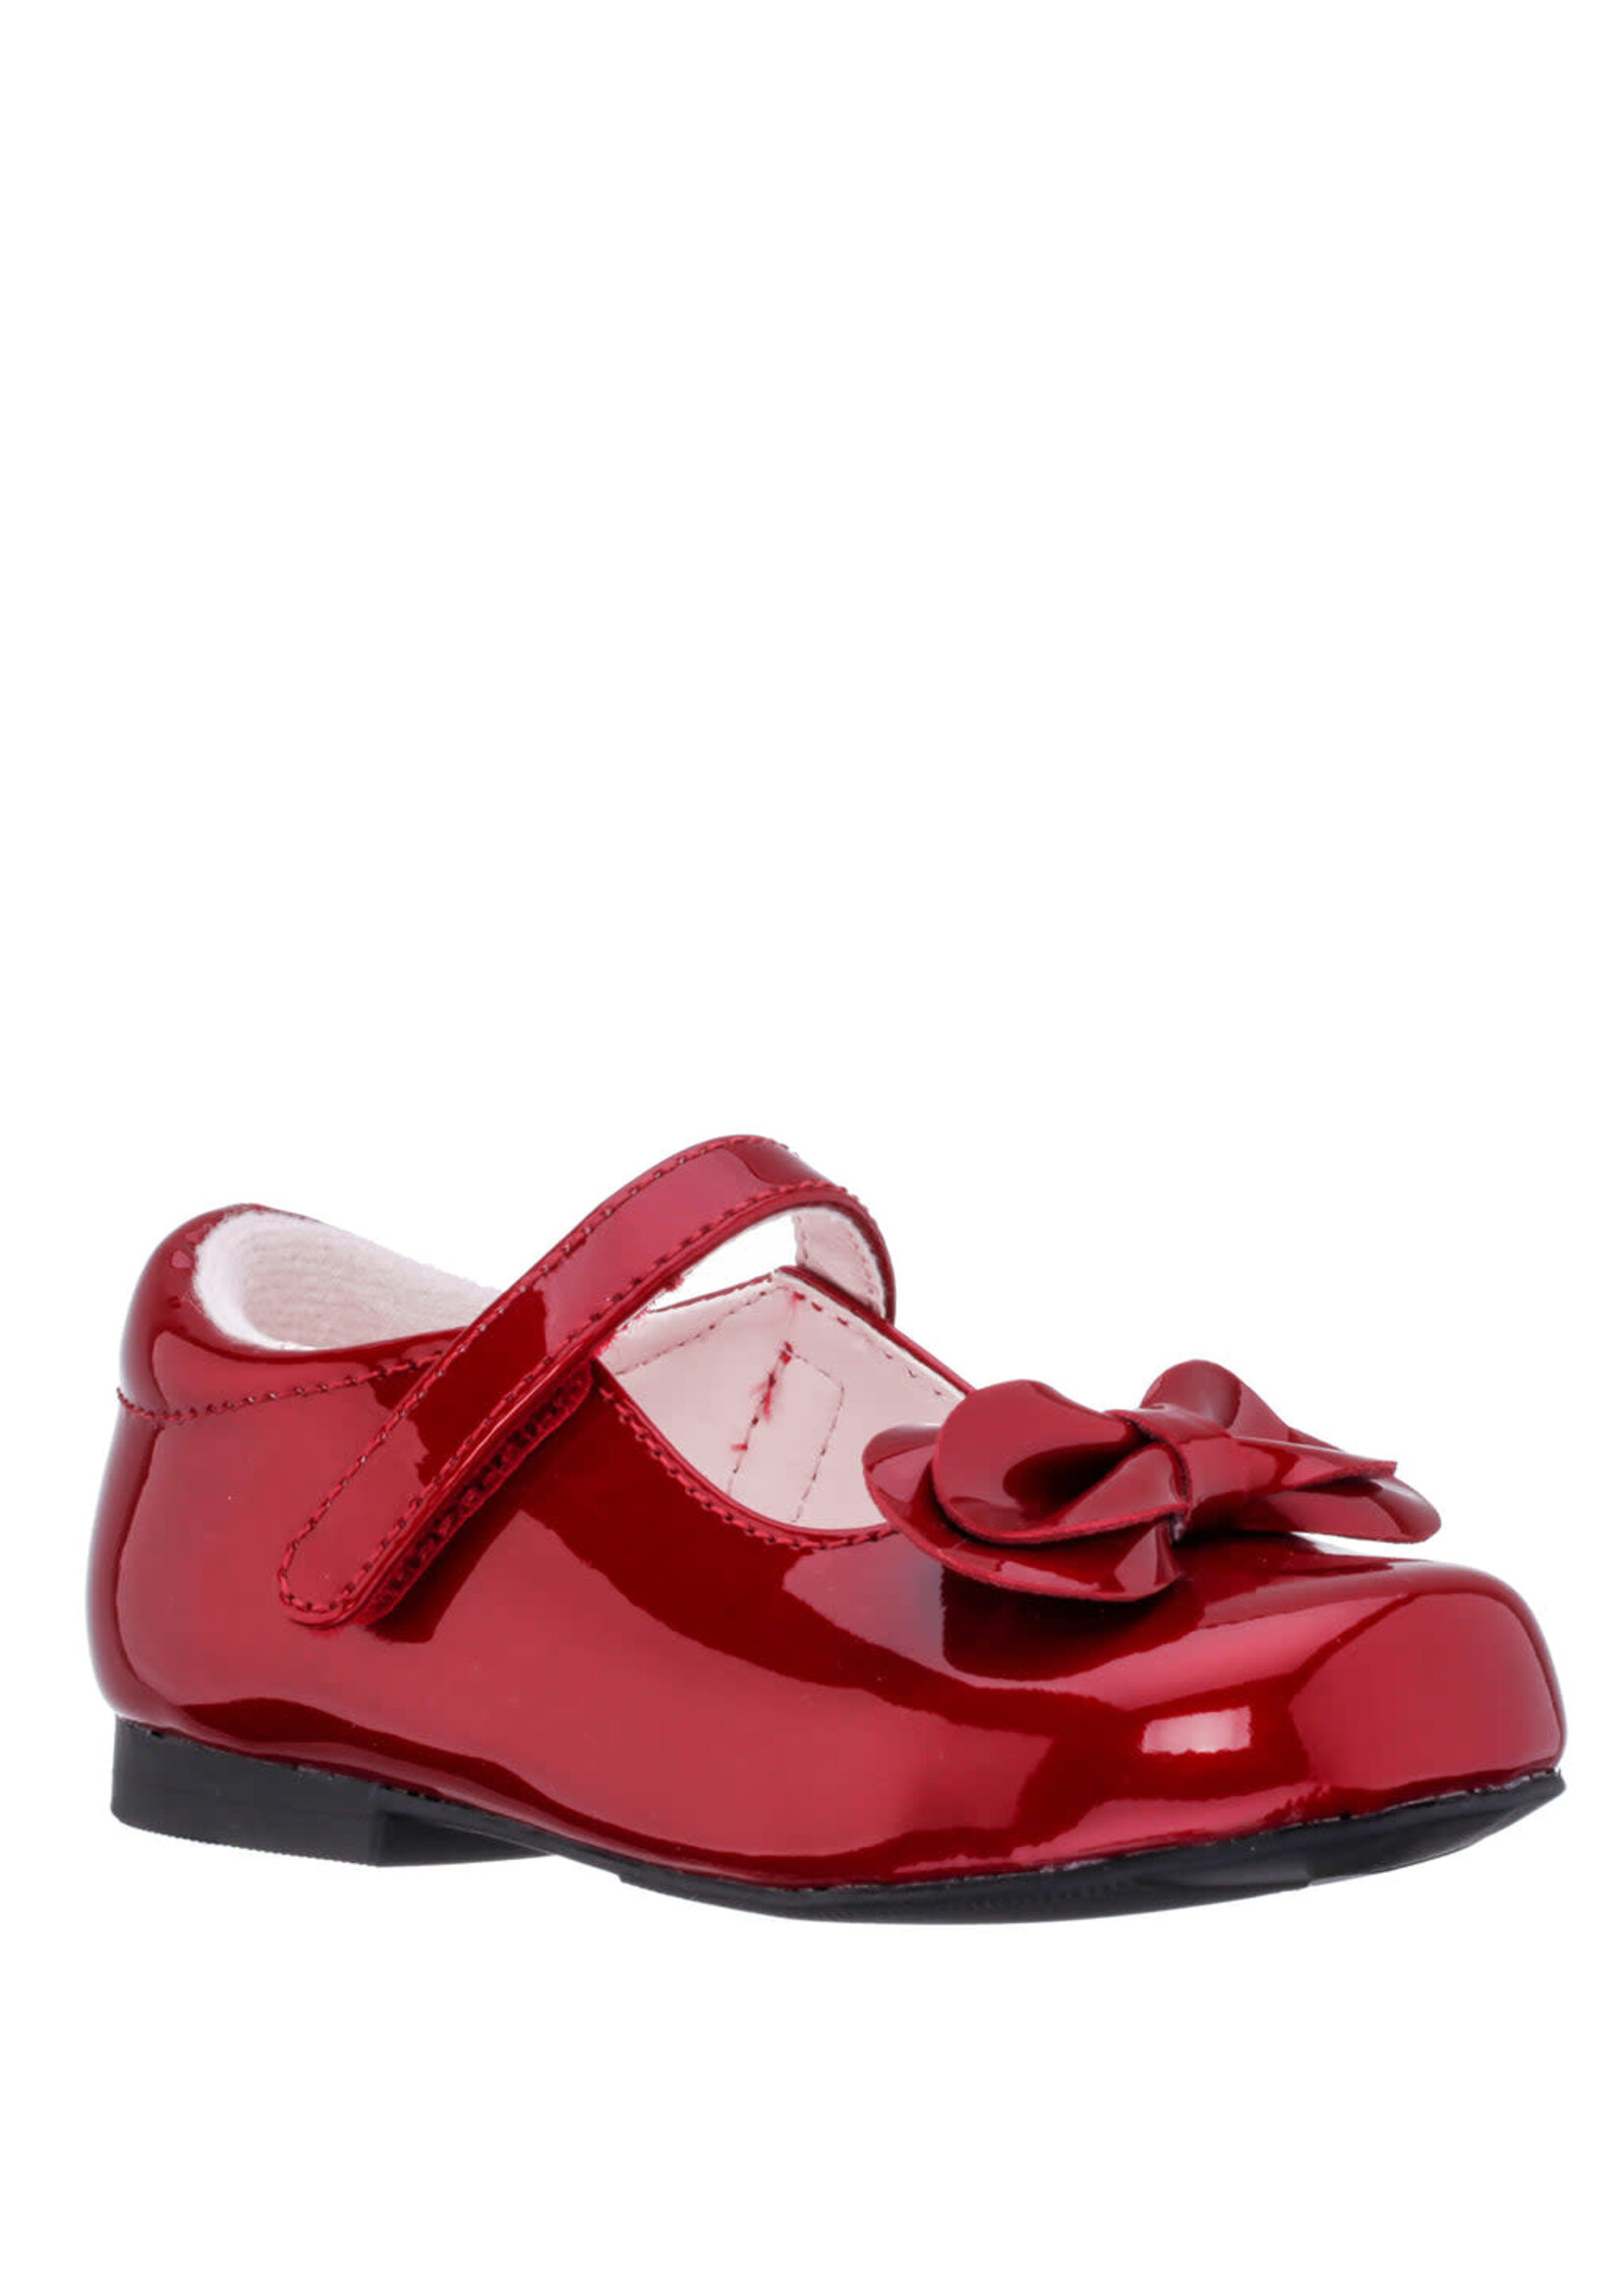 Nina Footwear Krista Red Patent Toddler by Nina